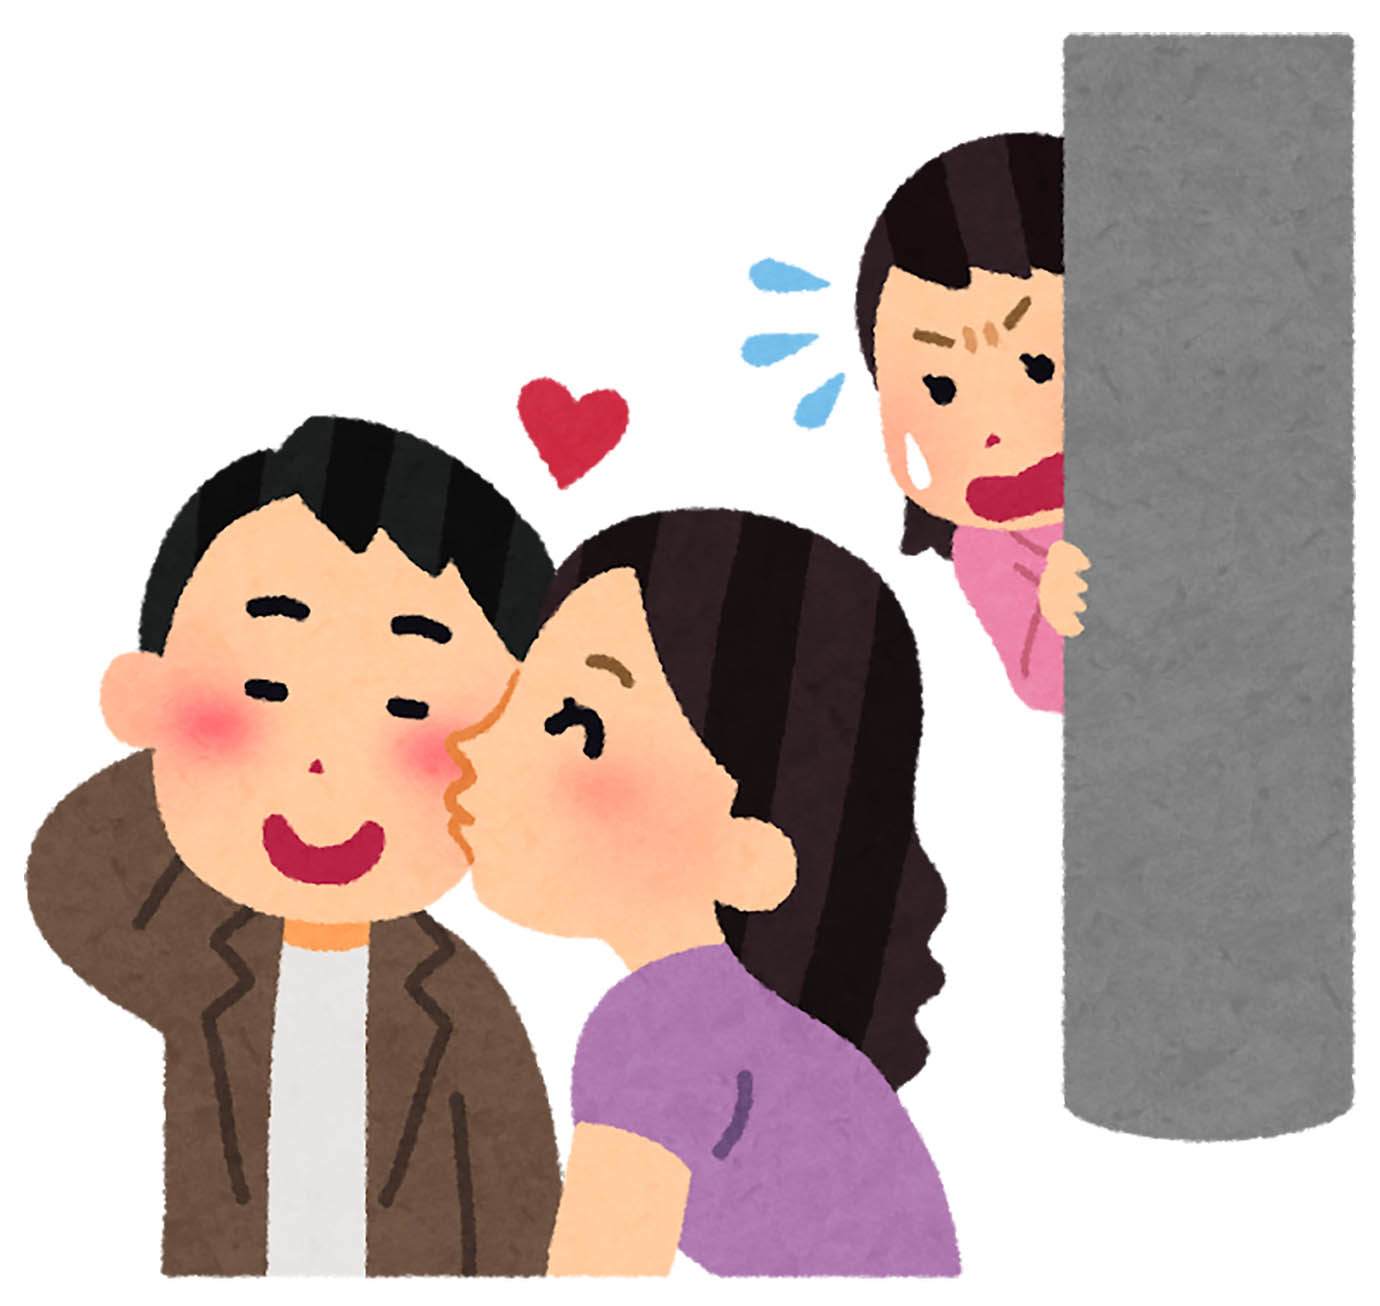 【衝撃】テレビ東京社員で漫画家もしてる真船佳奈先生が夫の浮気防止のため「パンツに自分の顔をプリントした漫画」が話題